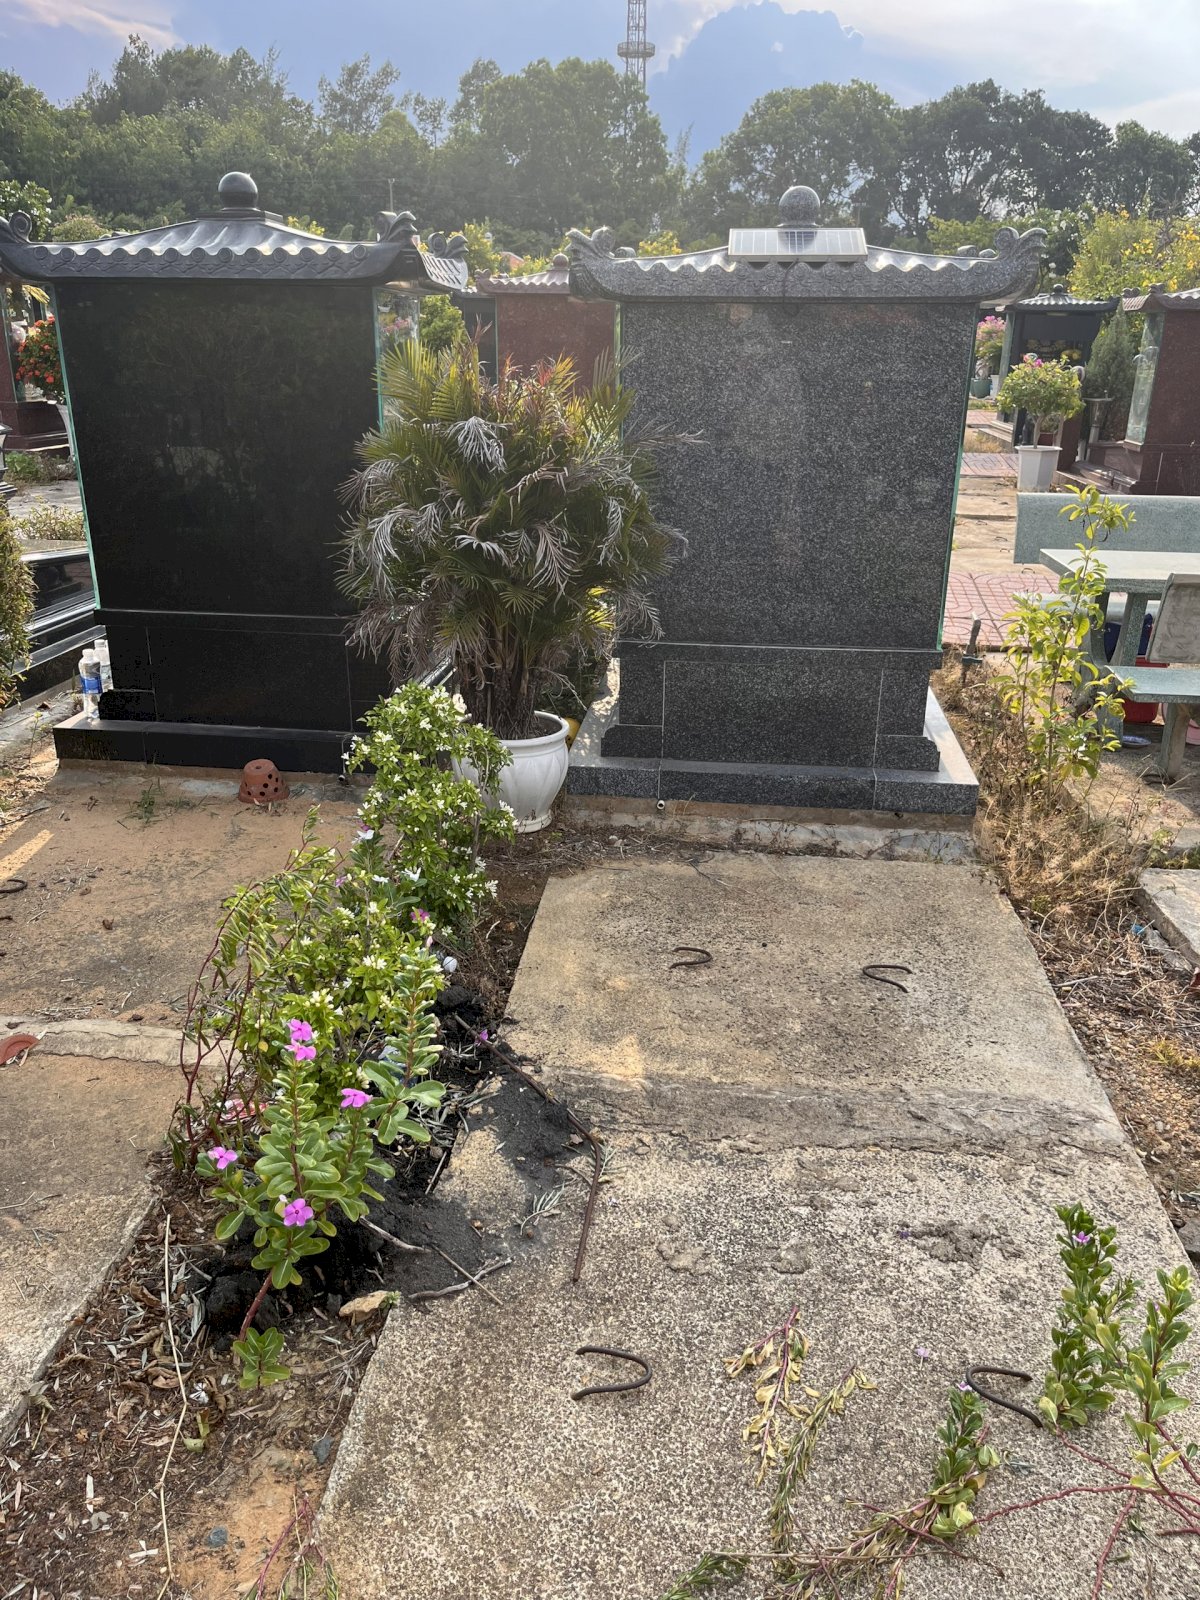 Bán 1 nền Mộ đơn, Khu Phú Quý, trong Dự án nghĩa trang Phúc An Viên, quận 9